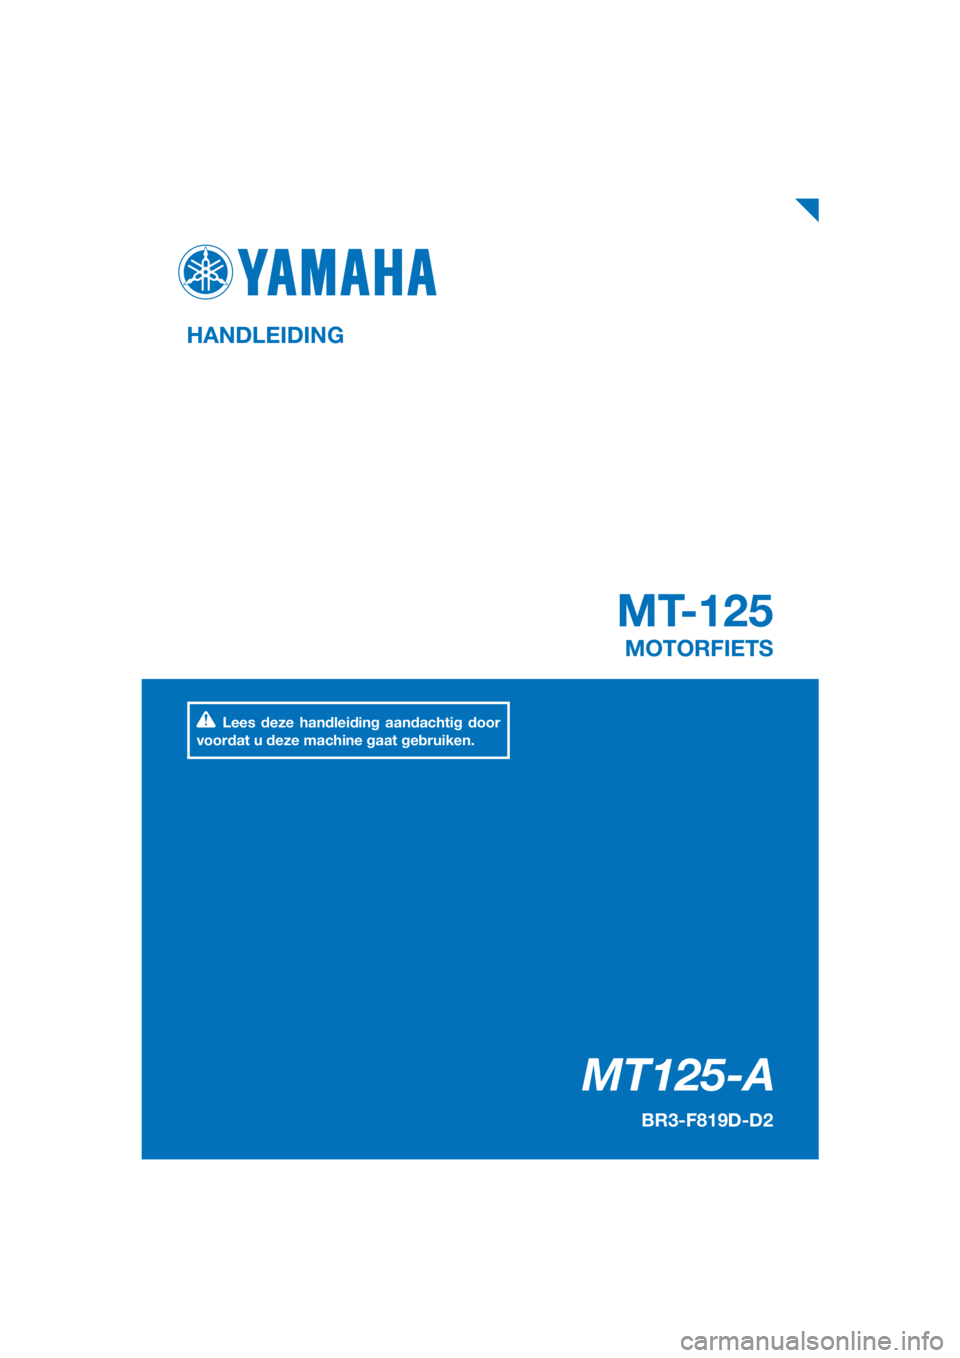 YAMAHA MT-125 2018  Instructieboekje (in Dutch) PANTONE285C
MT125-A
MT-125
HANDLEIDING
BR3-F819D-D2
MOTORFIETS
Lees deze handleiding aandachtig door 
voordat u deze machine gaat gebruiken.
[Dutch  (D)] 